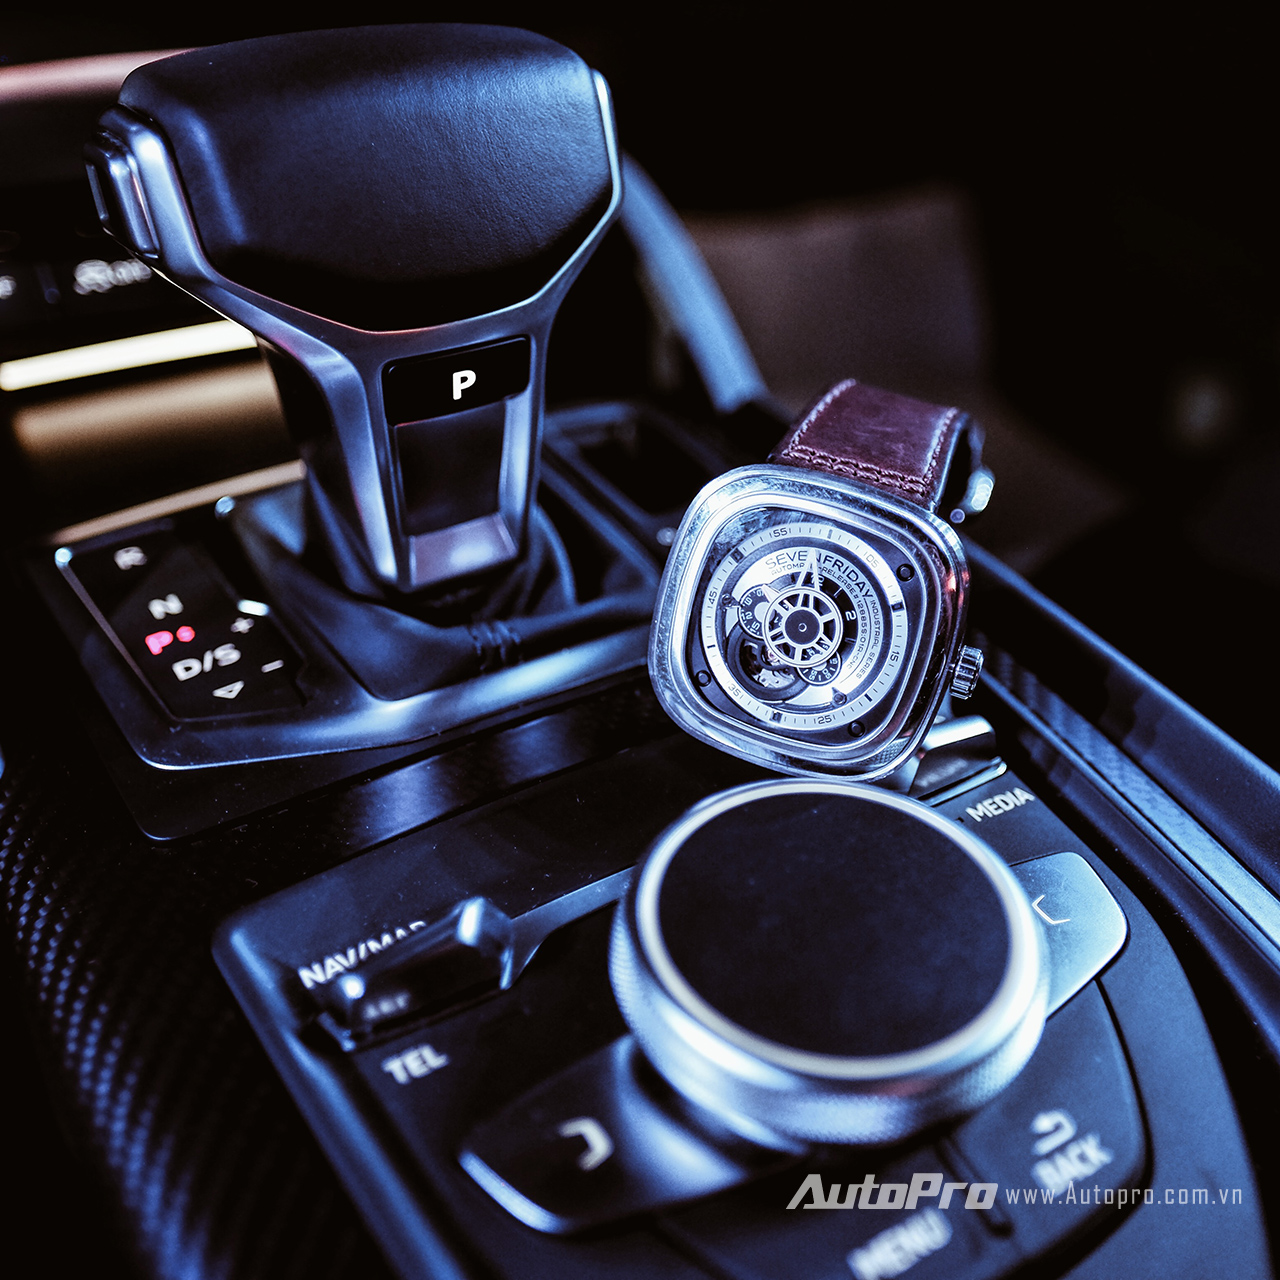 
Những mẫu đồng hồ thuộc dòng P của SevenFriday là thiết kế duy nhất của thương hiệu này hiện thị cách xem giờ truyền thống với kim giờ và kim phút cùng và những đĩa quay nhỏ được xếp theo nhiều lớp trong mặt đồng hồ. Và tất nhiên, khi kết hợp SevenFriday P1B/01 trong khoang lái của Audi A4 thế hệ mới thì vẫn có thể thấy được sự hoà hợp giữa lịch sự, mạnh mẽ nhưng không kém phần mềm mại.
